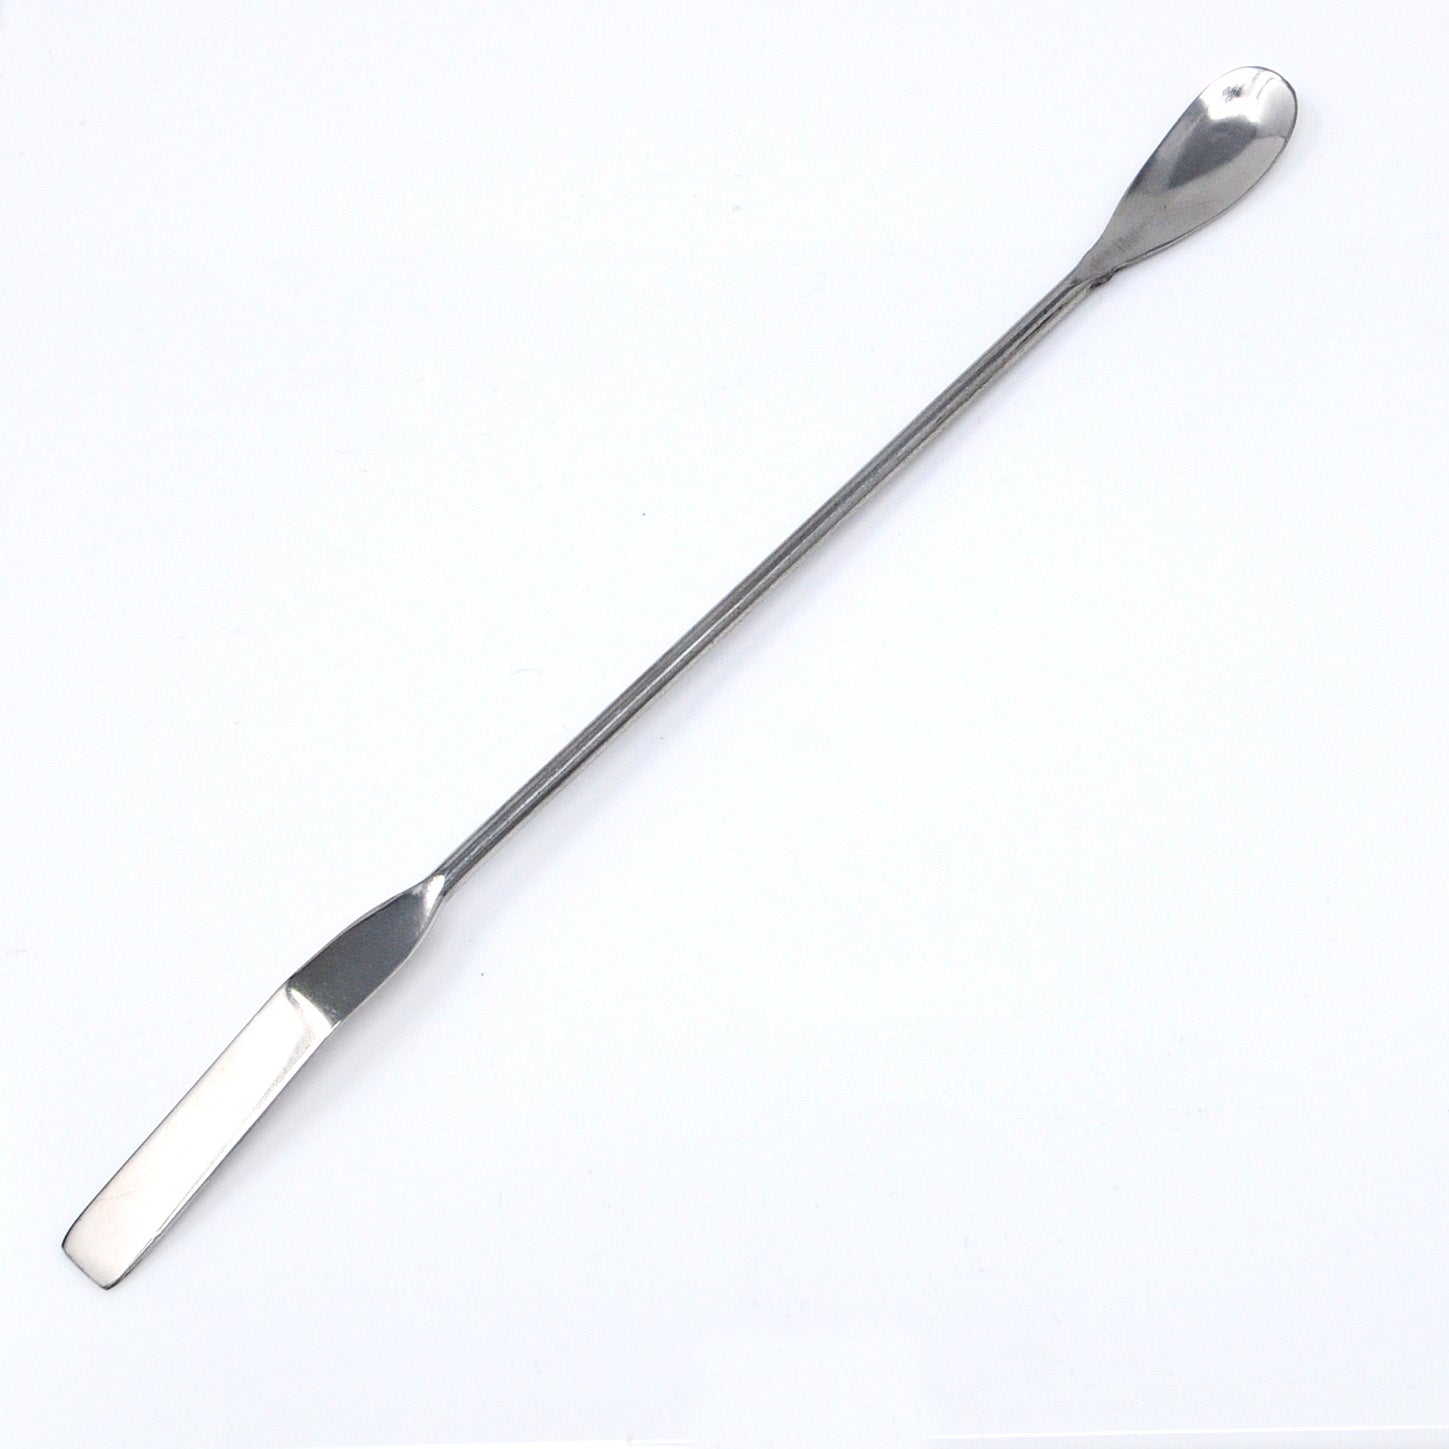 laboratory spatula